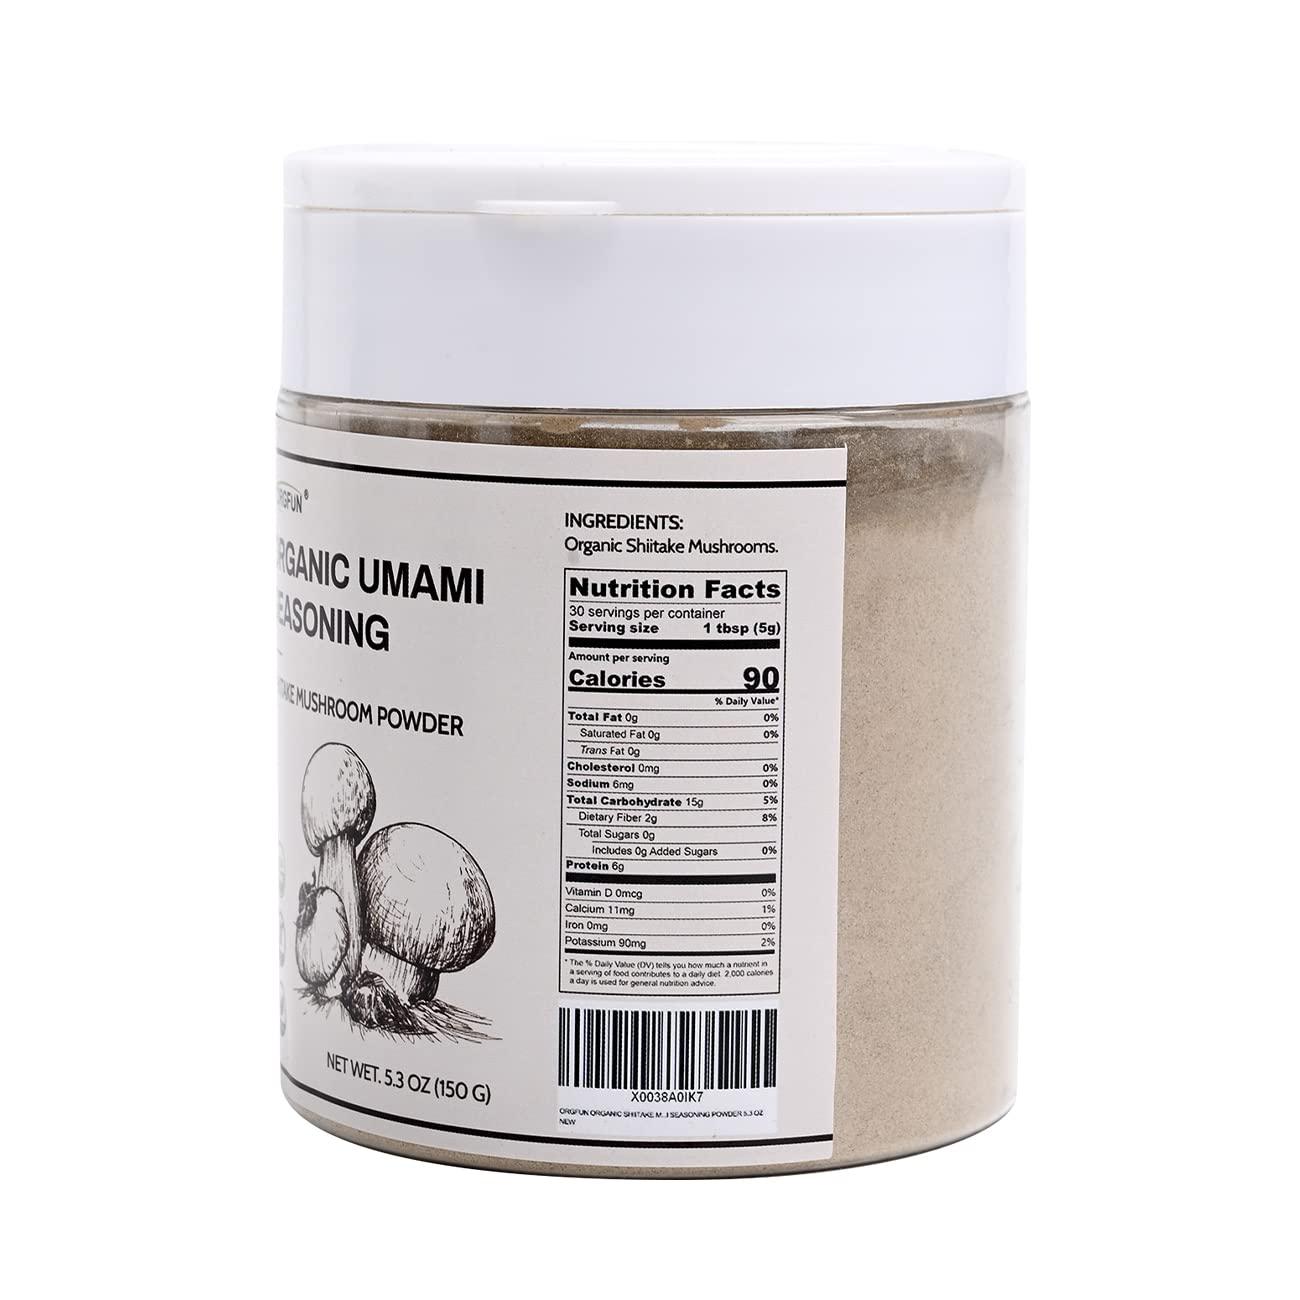 ORGFUN Organic Shiitake Mushrooms Powder, Natural Umami Seasoning, Mushroom  Powder for Cooking, 5.3 Oz